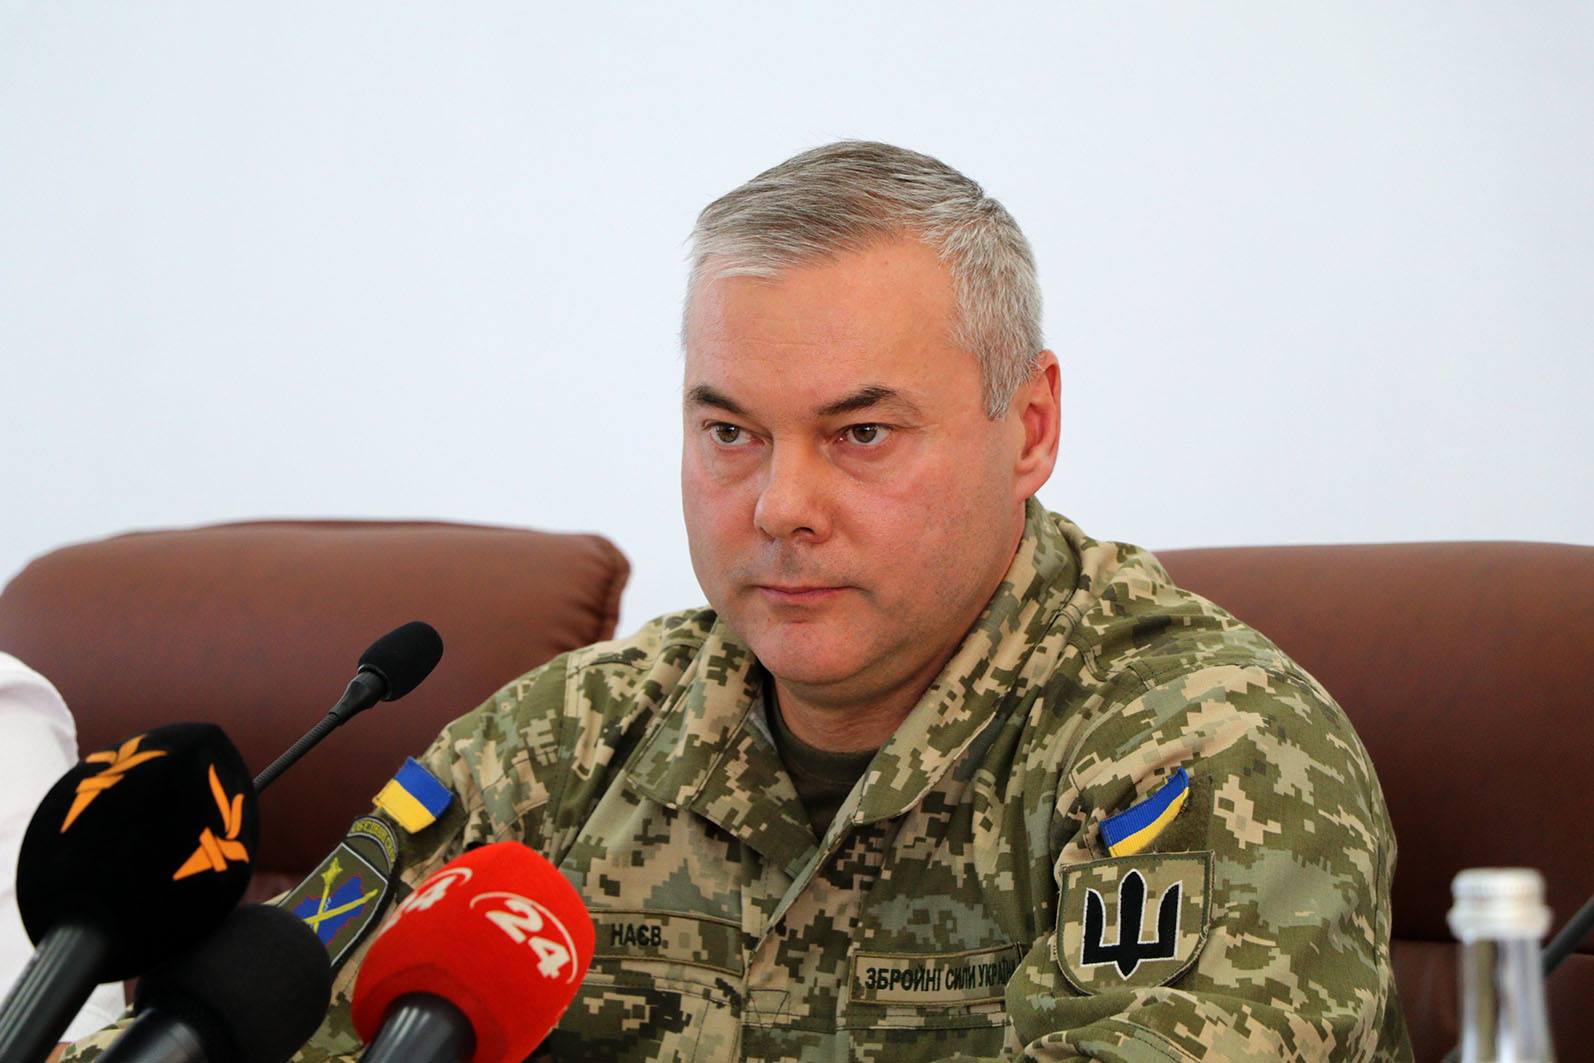 "ВСУ понадобится меньше суток на освобождение Донбасса", - генерал Наев